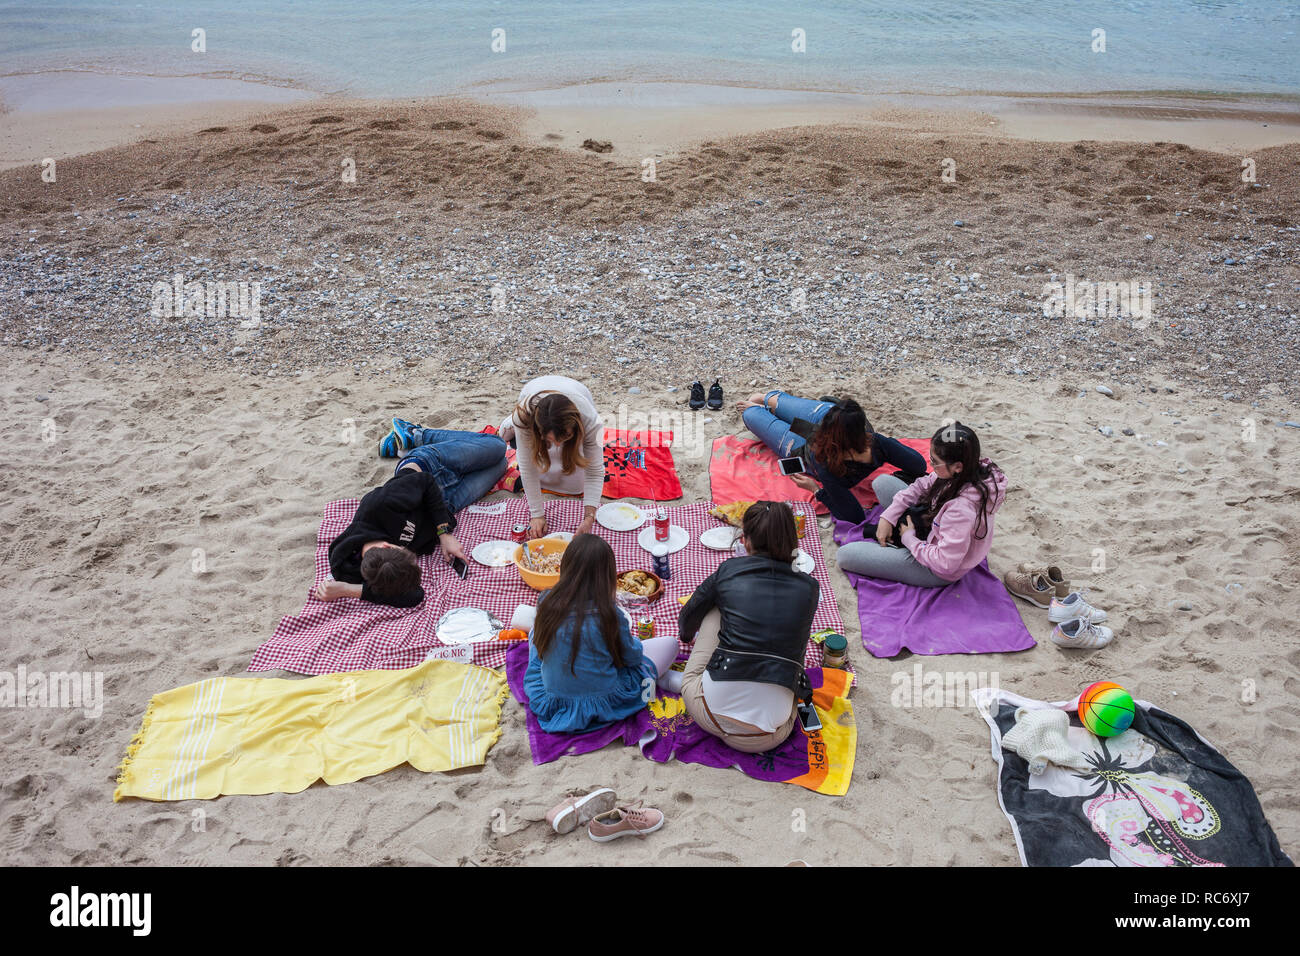 Gruppe von jungen Menschen mit Picknick an einem Strand in Villefranche-sur-Mer in Frankreich, Badeort am Mittelmeer auf dem französischen Riviera-Côte d'Azur Stockfoto